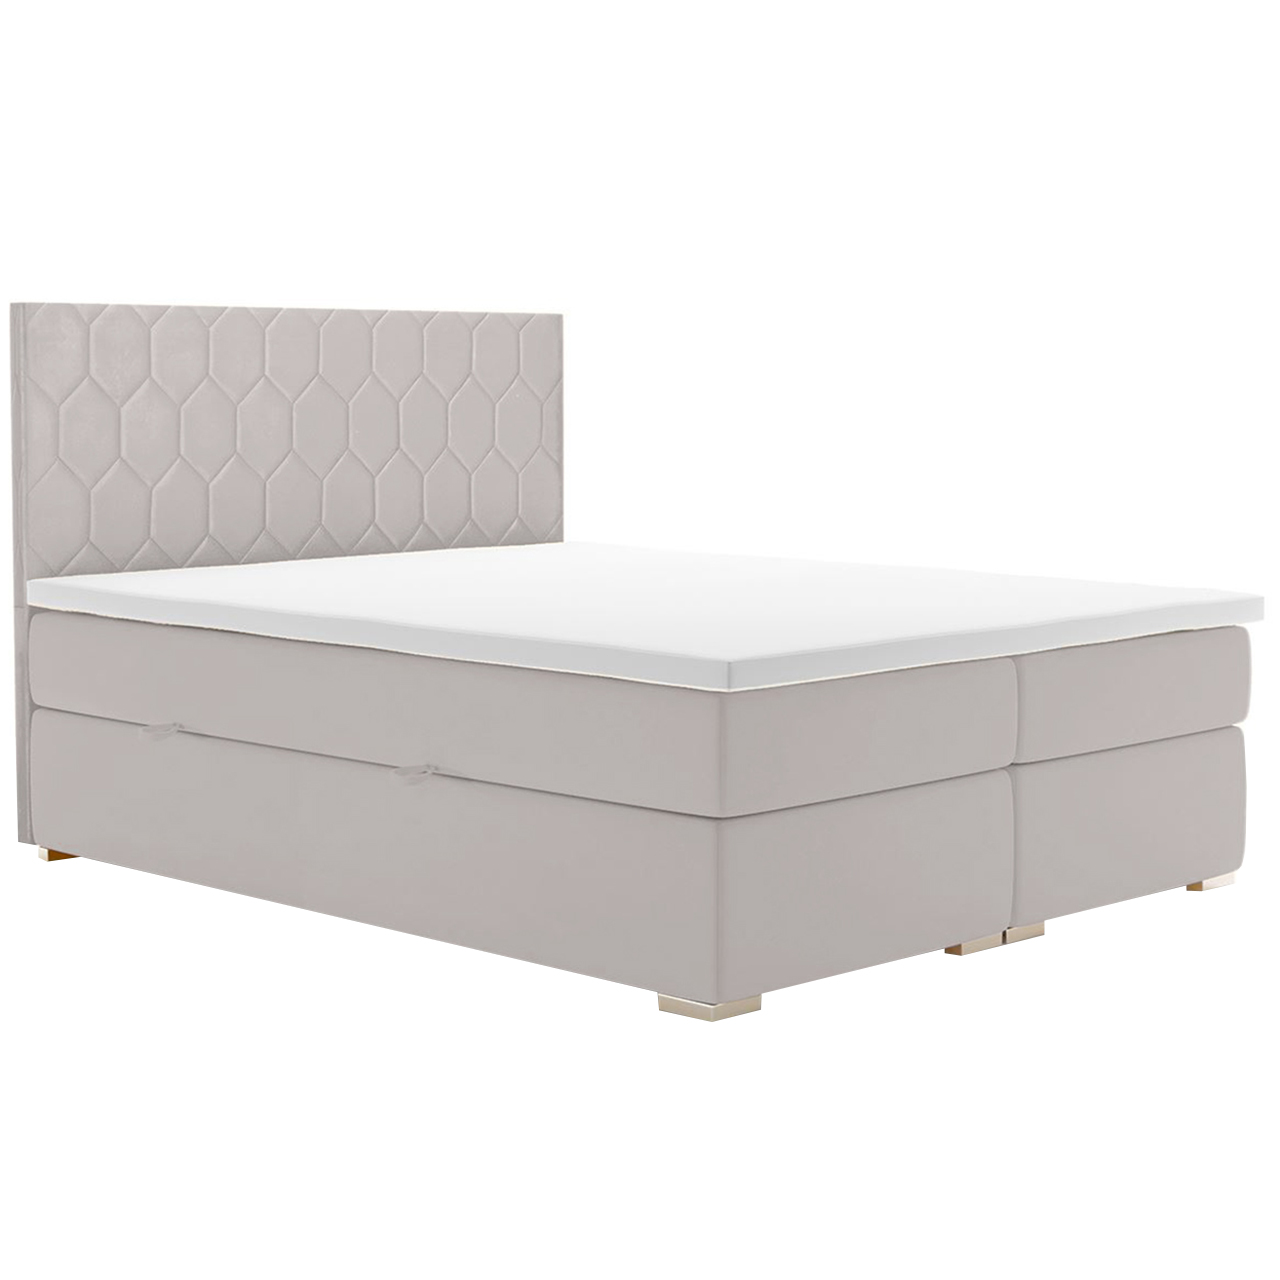 Upholstered bed PILATES 160x200 magic velvet 2218